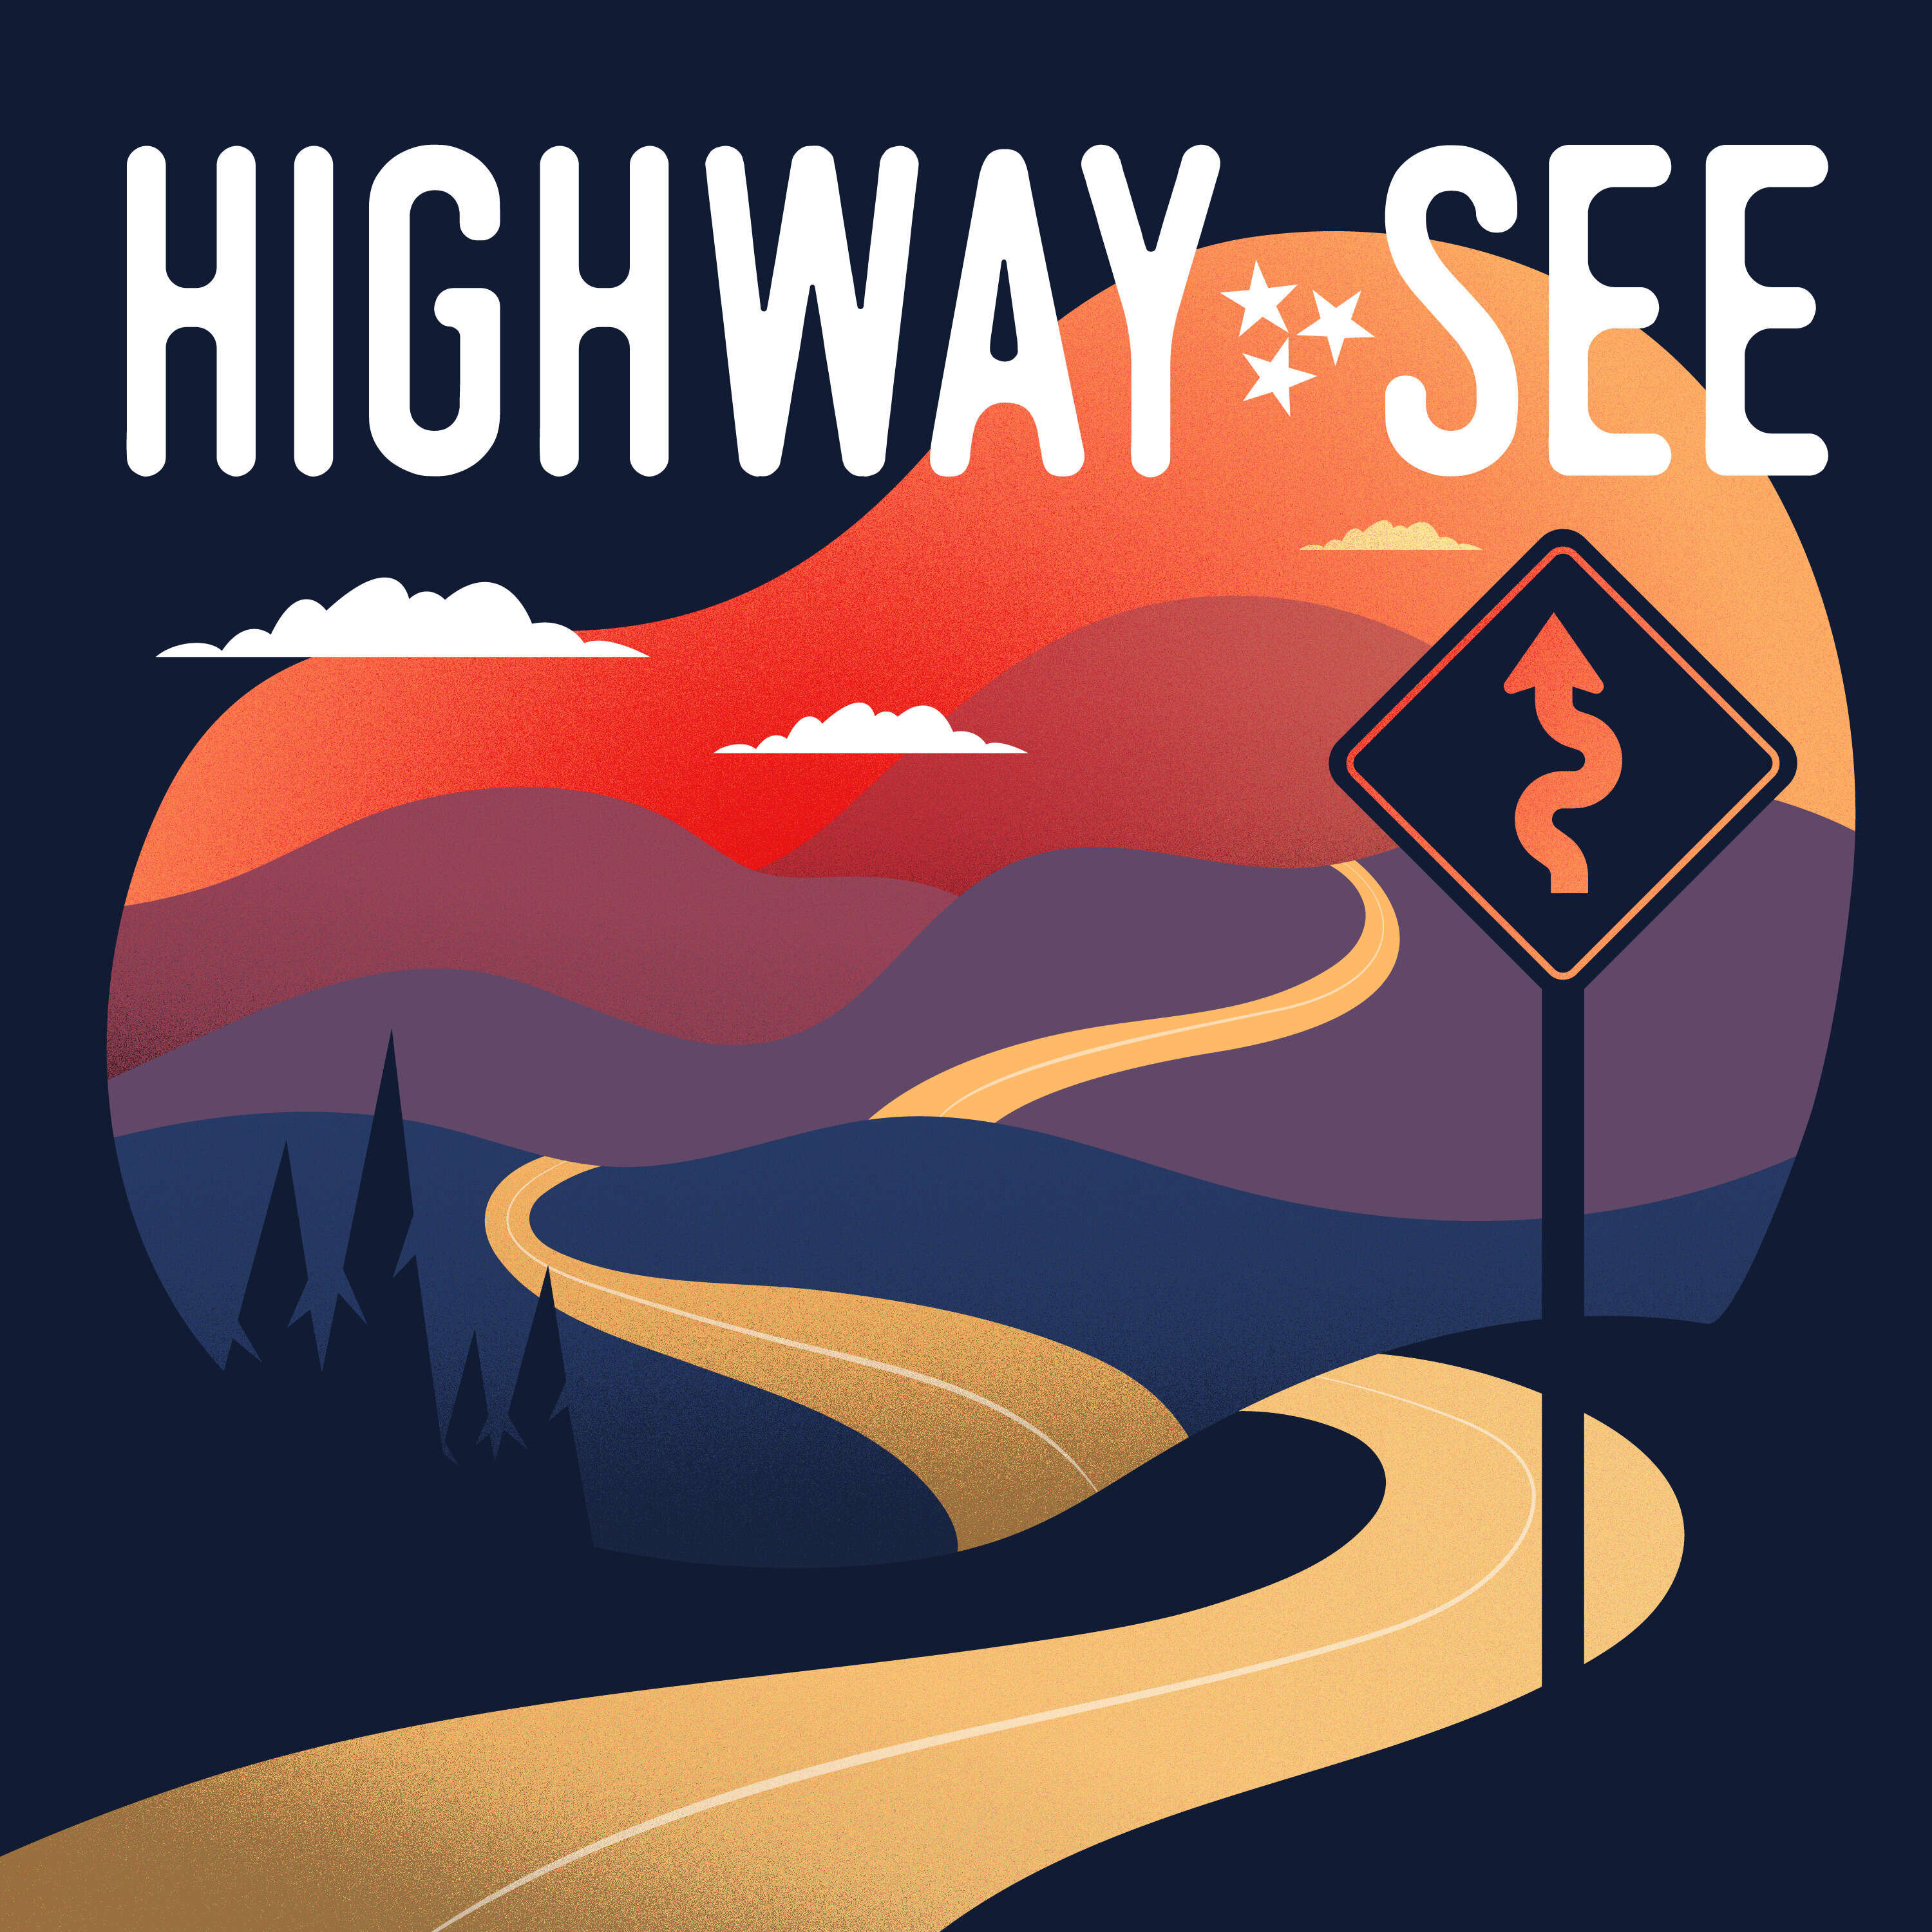 Highway See